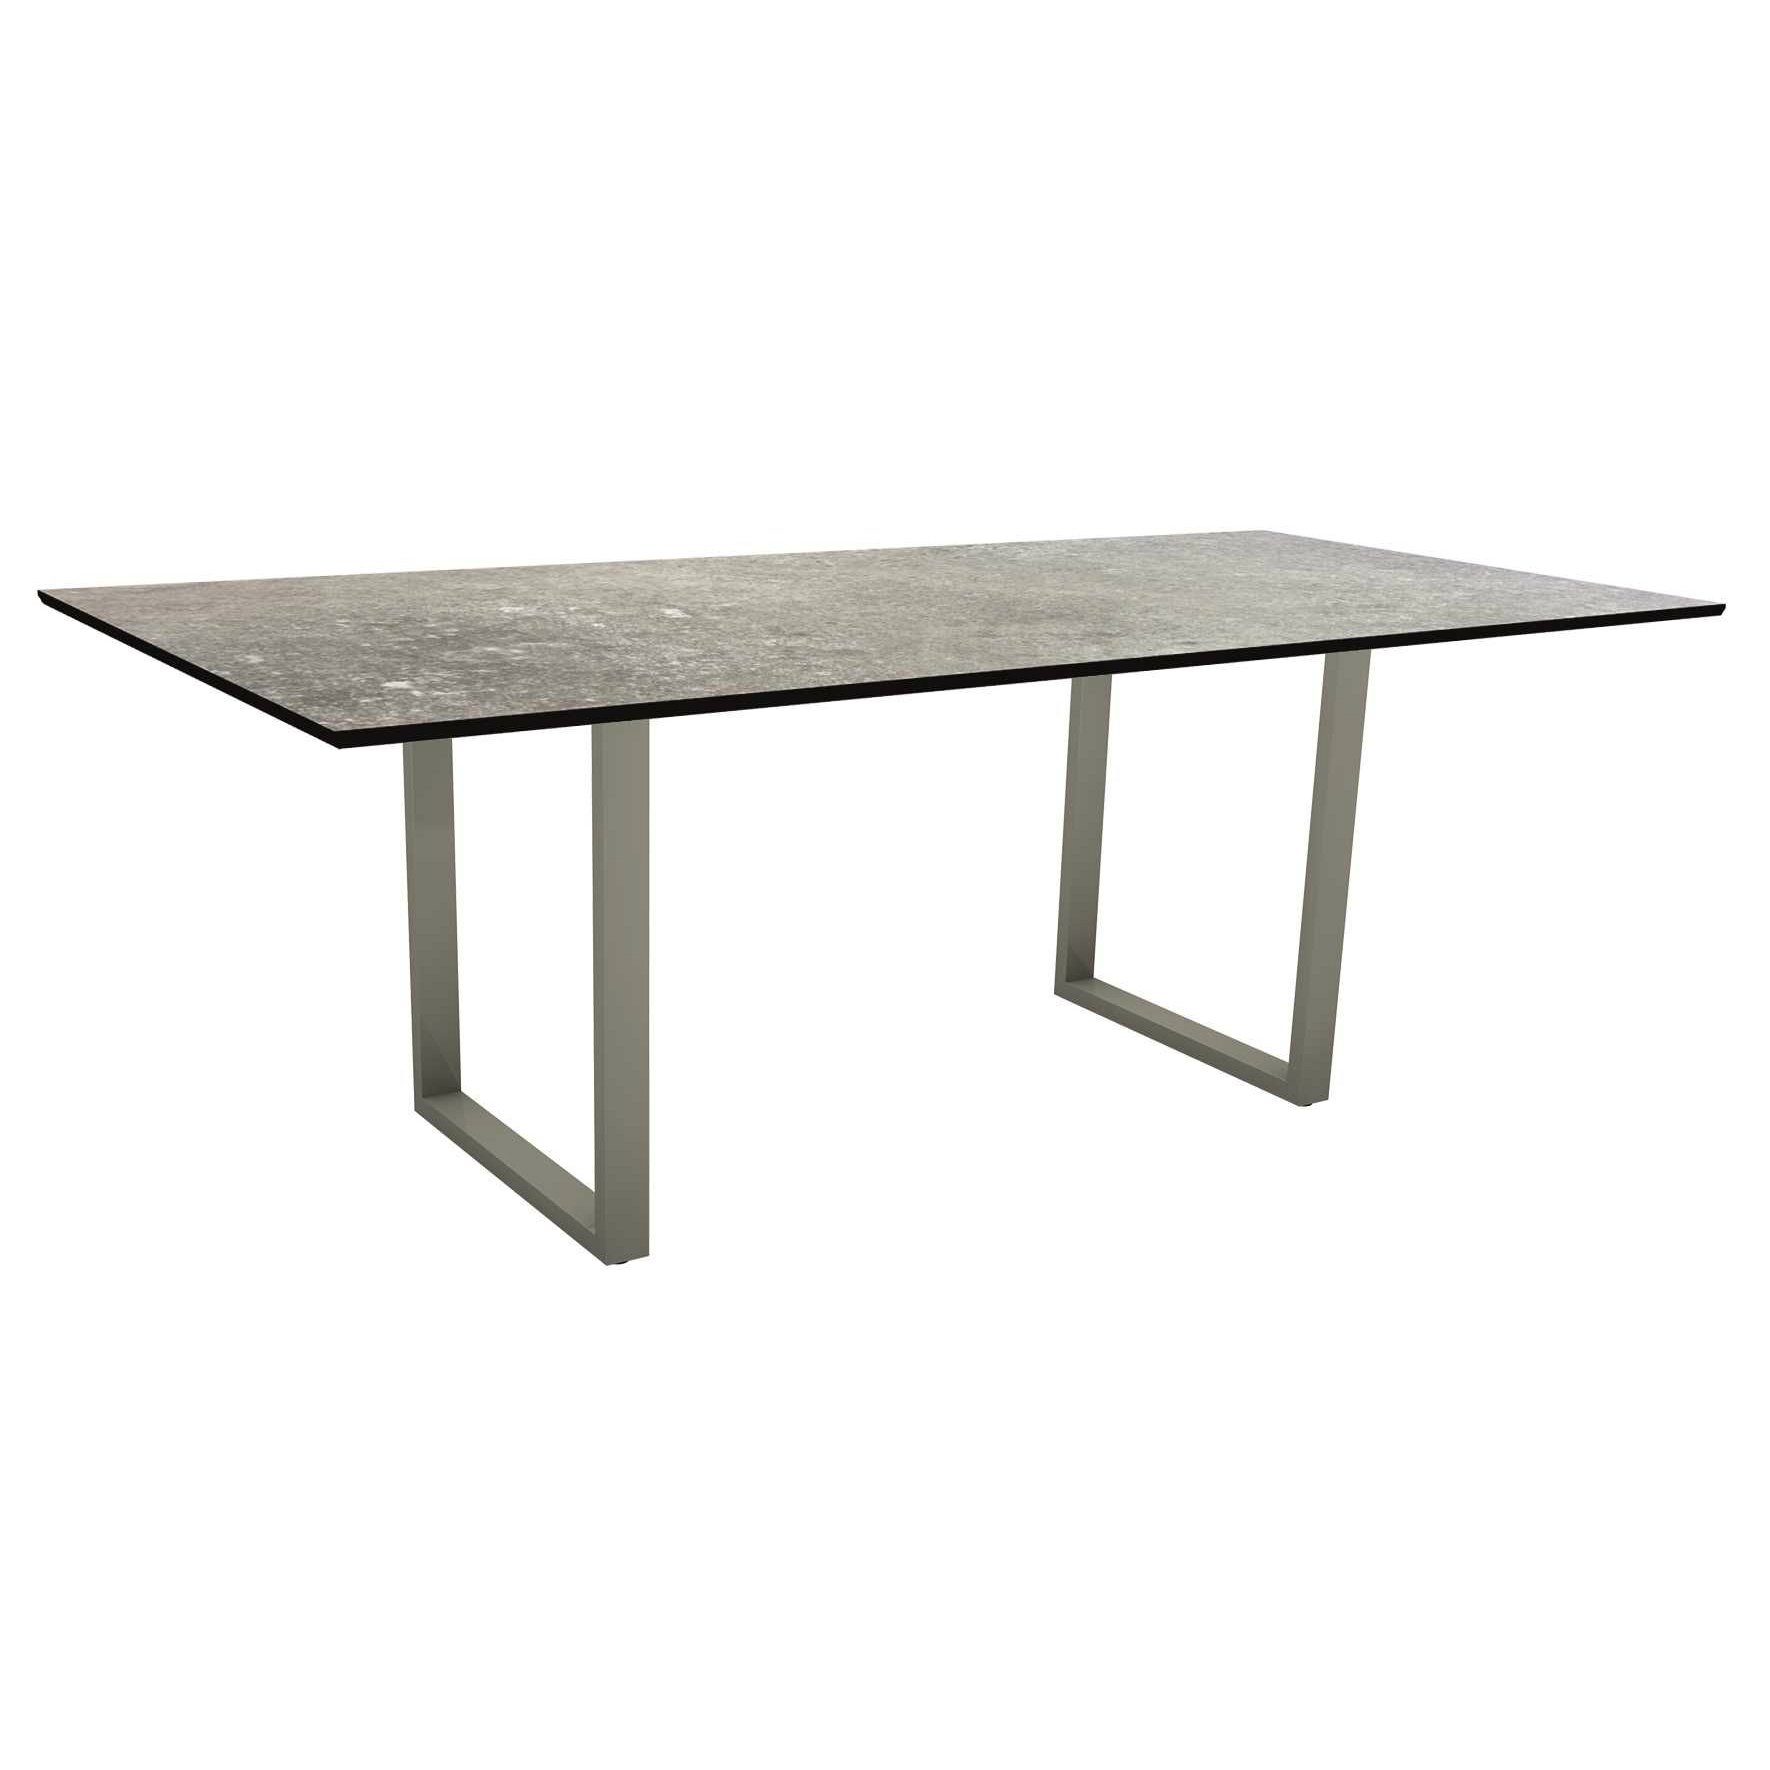 Stern Kufentisch, Maße: 200x100x73 cm, Gestell Aluminium graphit, Tischplatte HPL Vintage stone